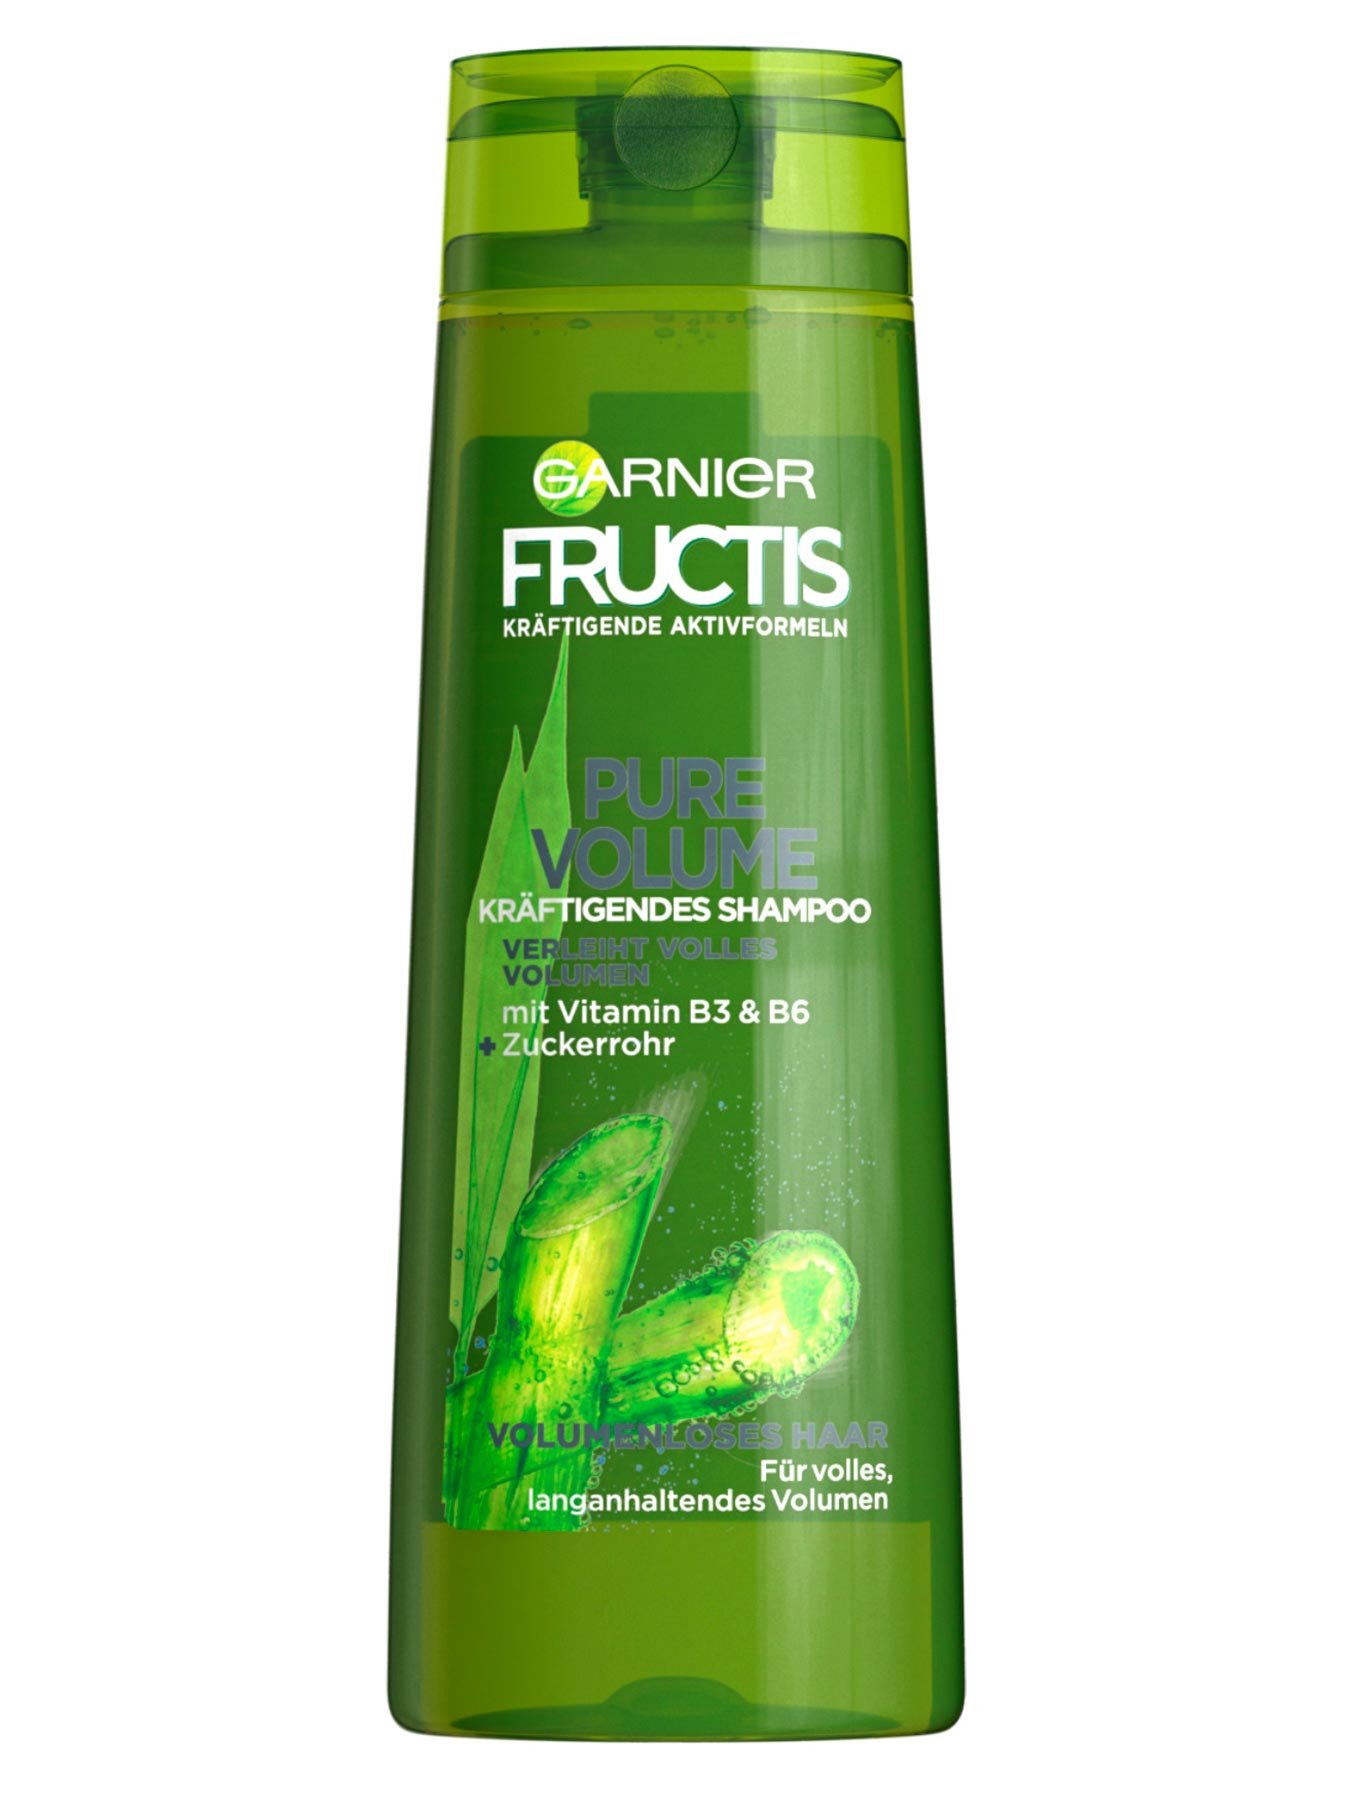 Kraeftigendes-Shampoo-Fructis-Pure-Volume-300ml-Vorderseite-Garnier-Deutschland-gross